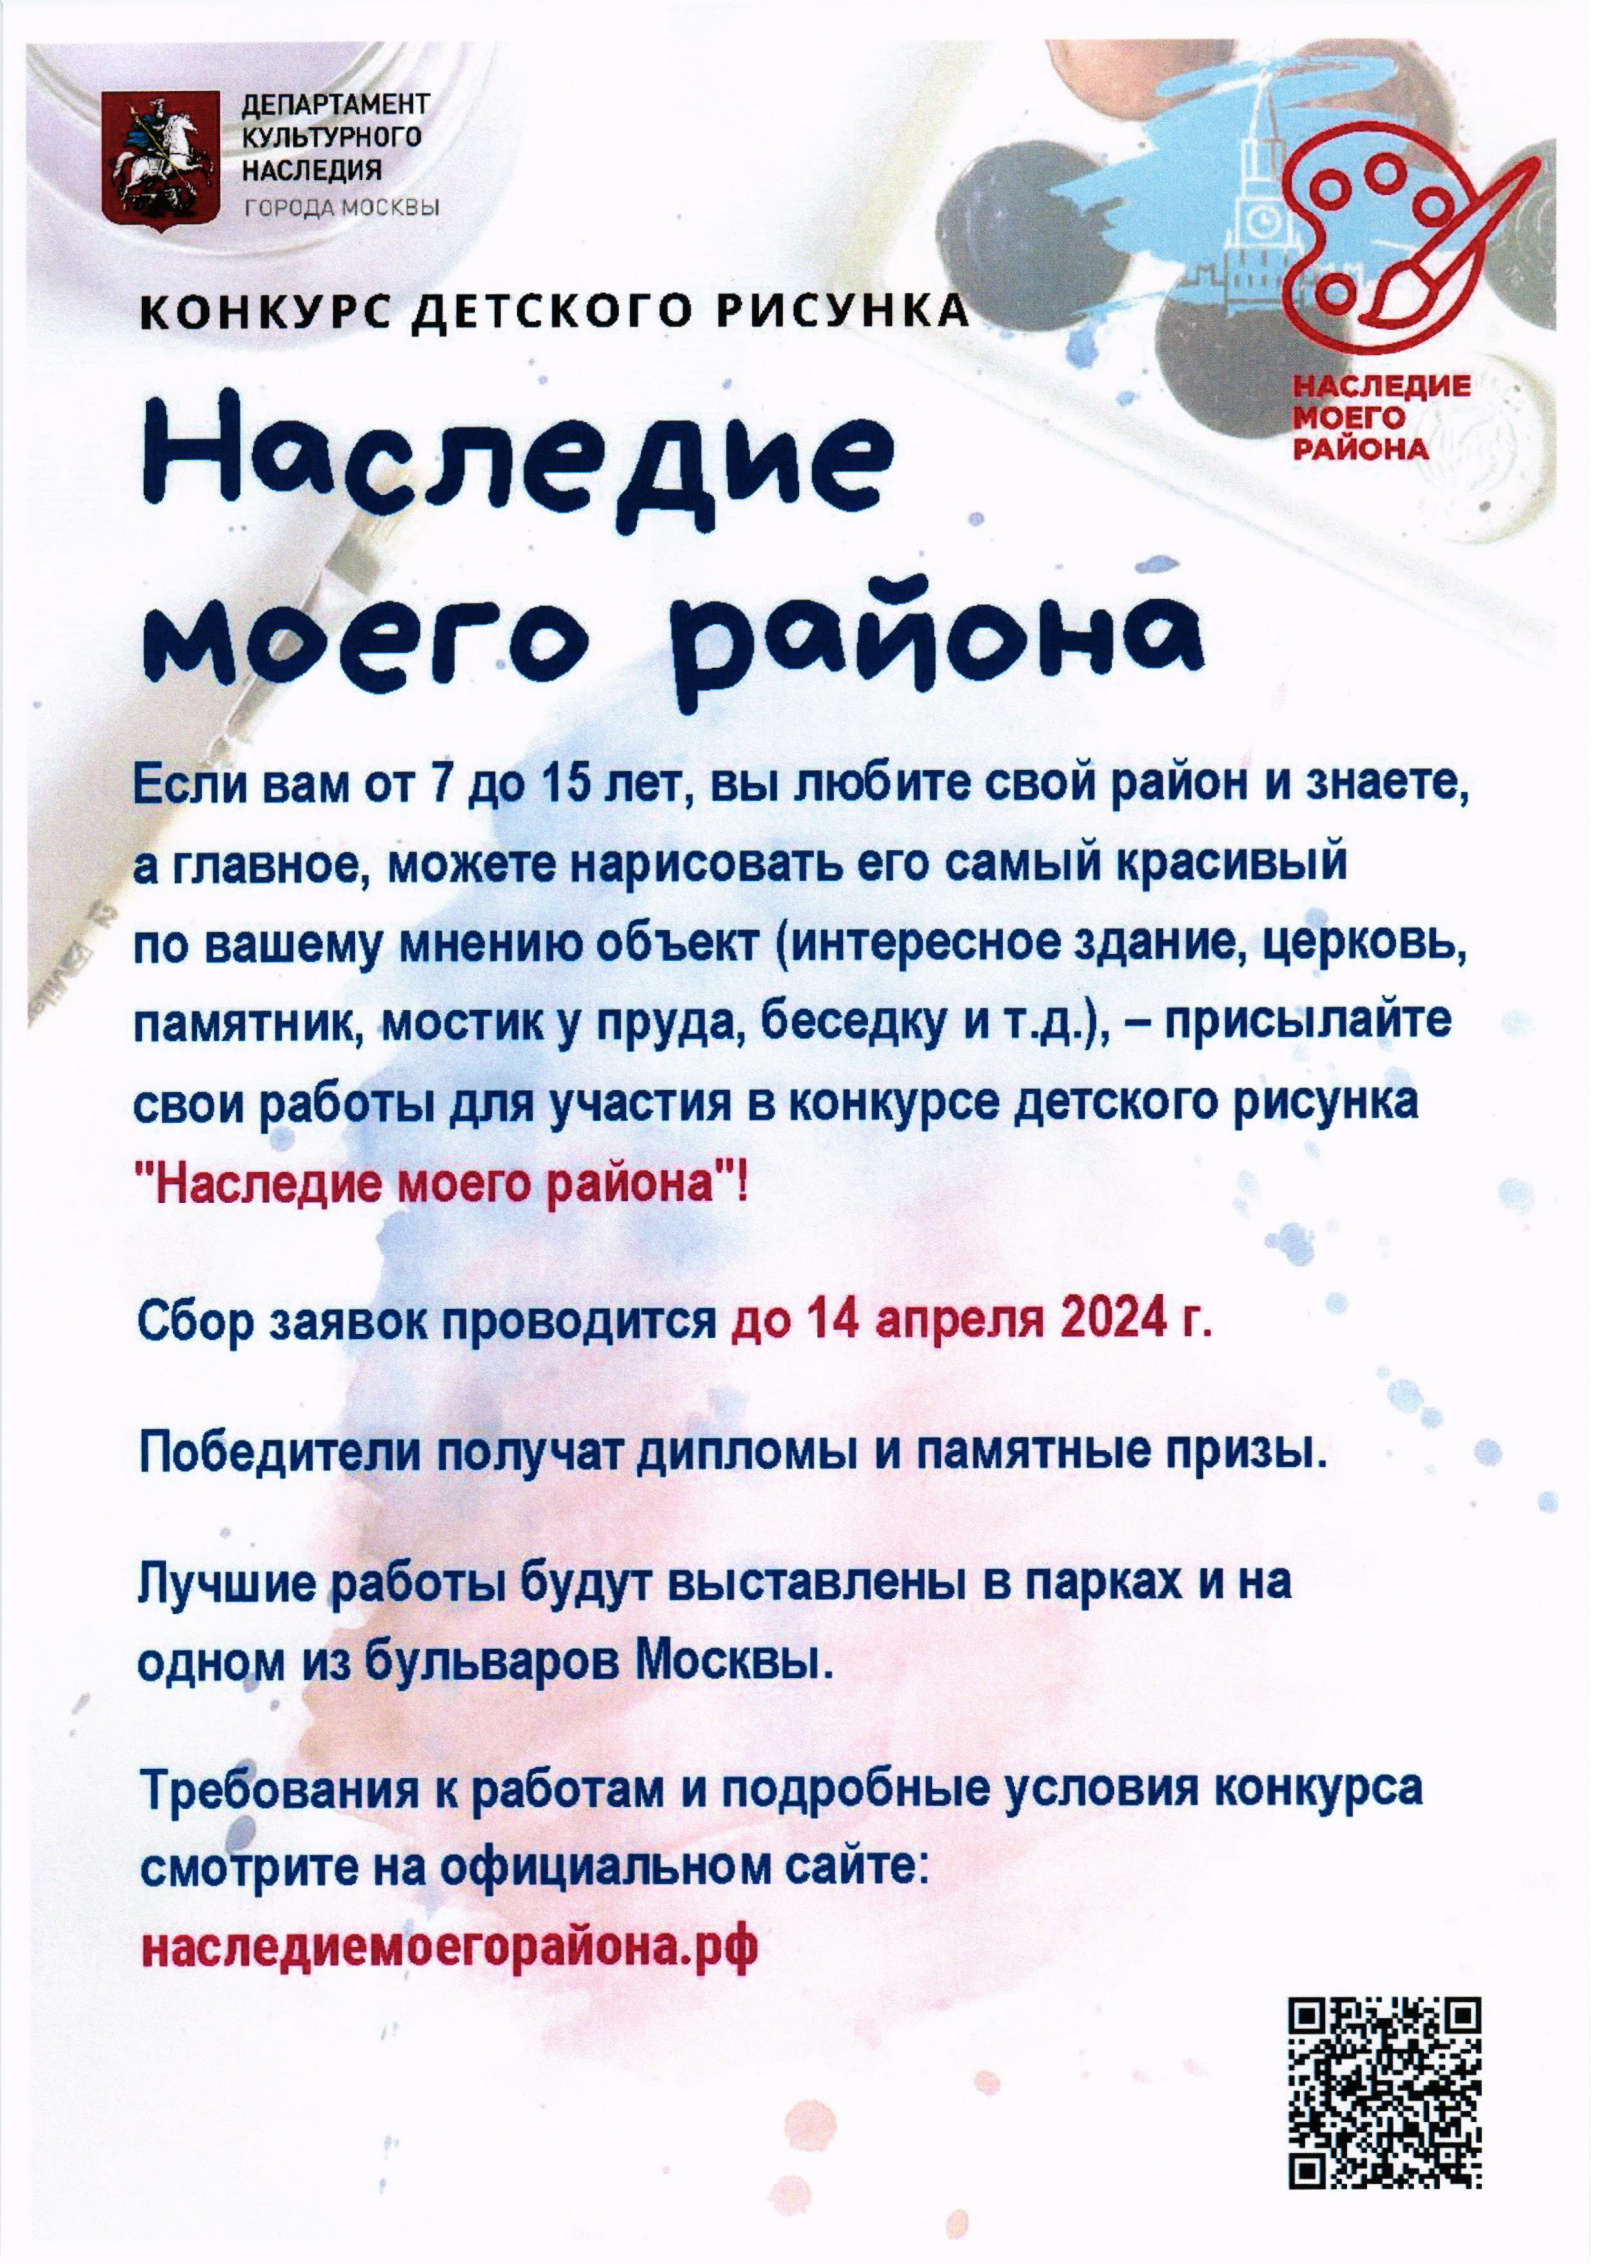 В Москве пройдет VI конкурс детского рисунка «Наследие моего района», организованный Департаментом культурного наследия города Москвы